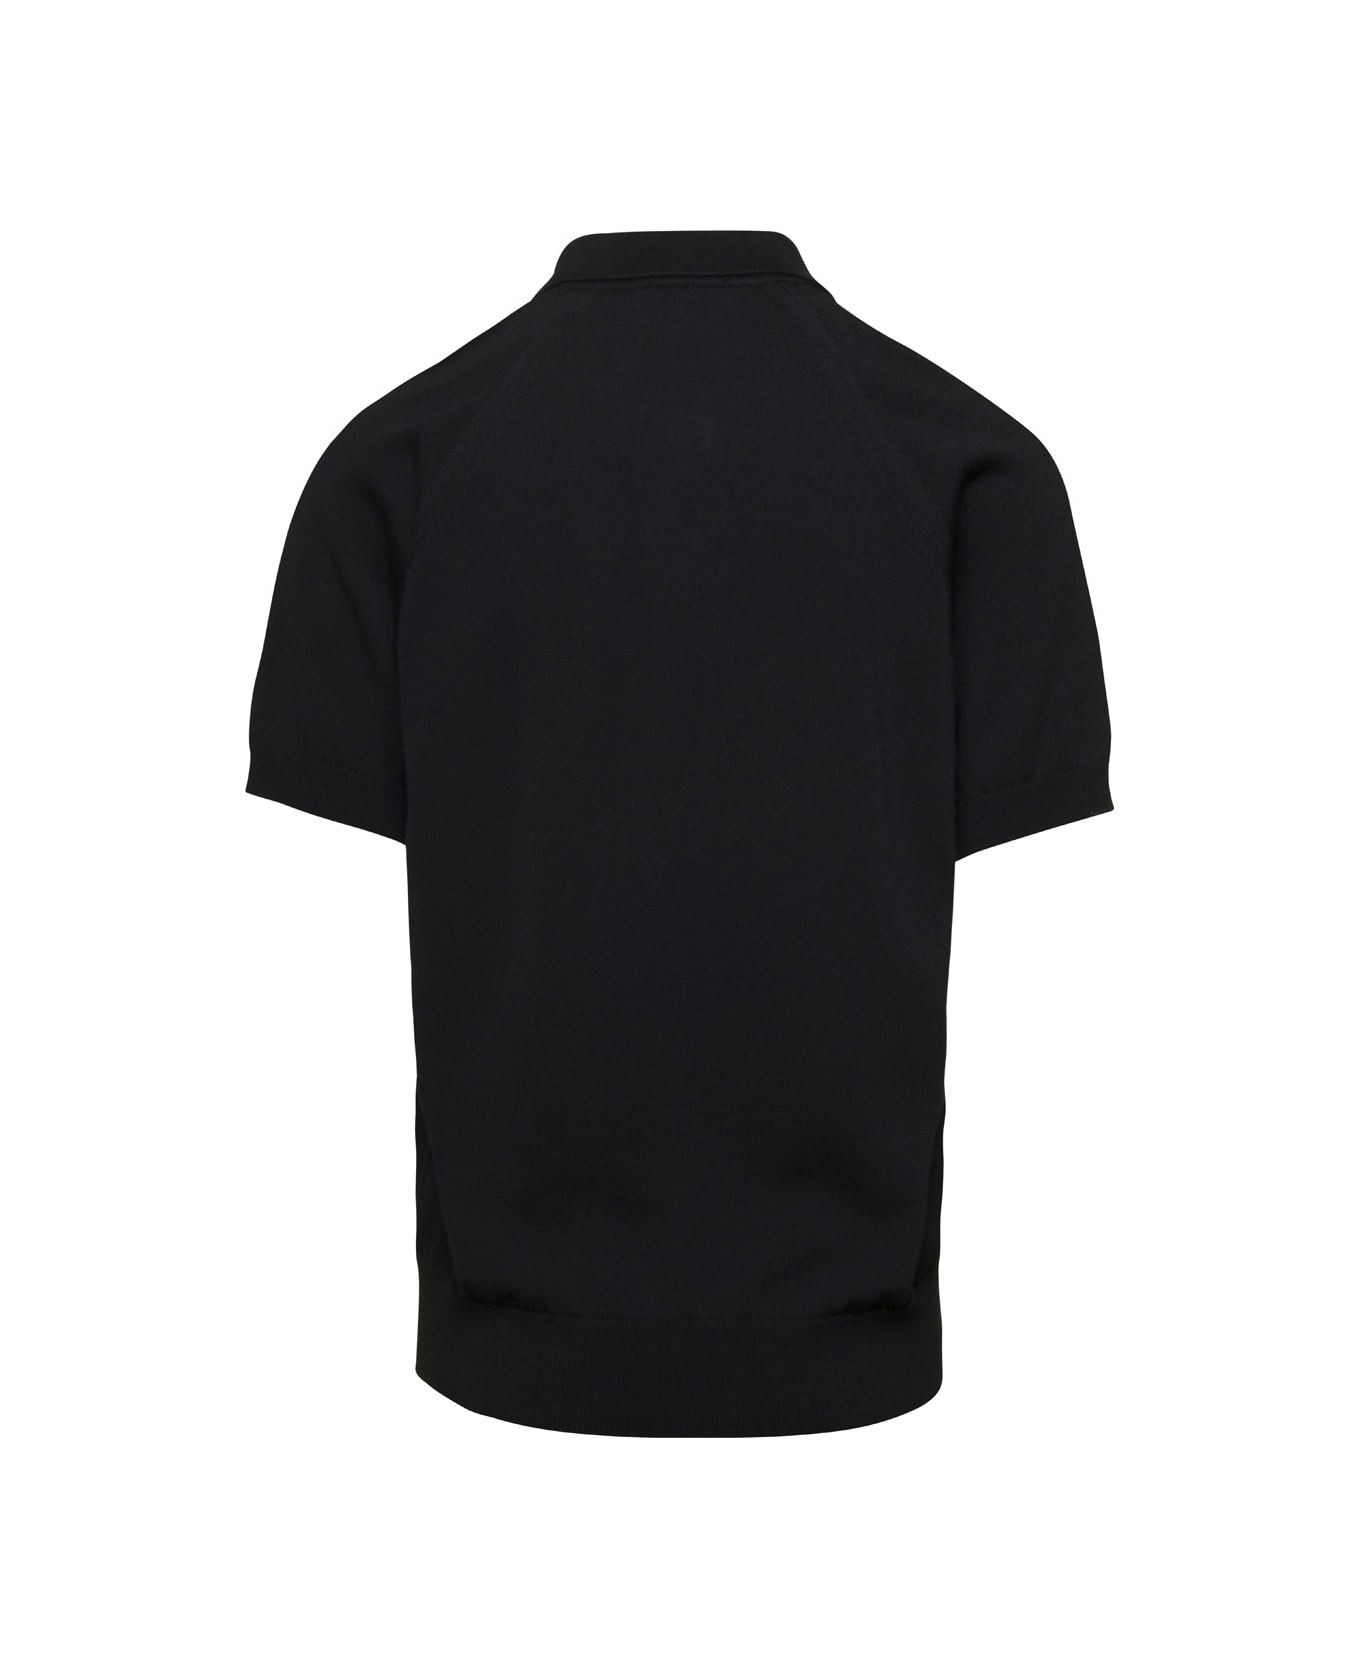 Lardini Black Polo T-shirt In Cotton Blend Man - Black